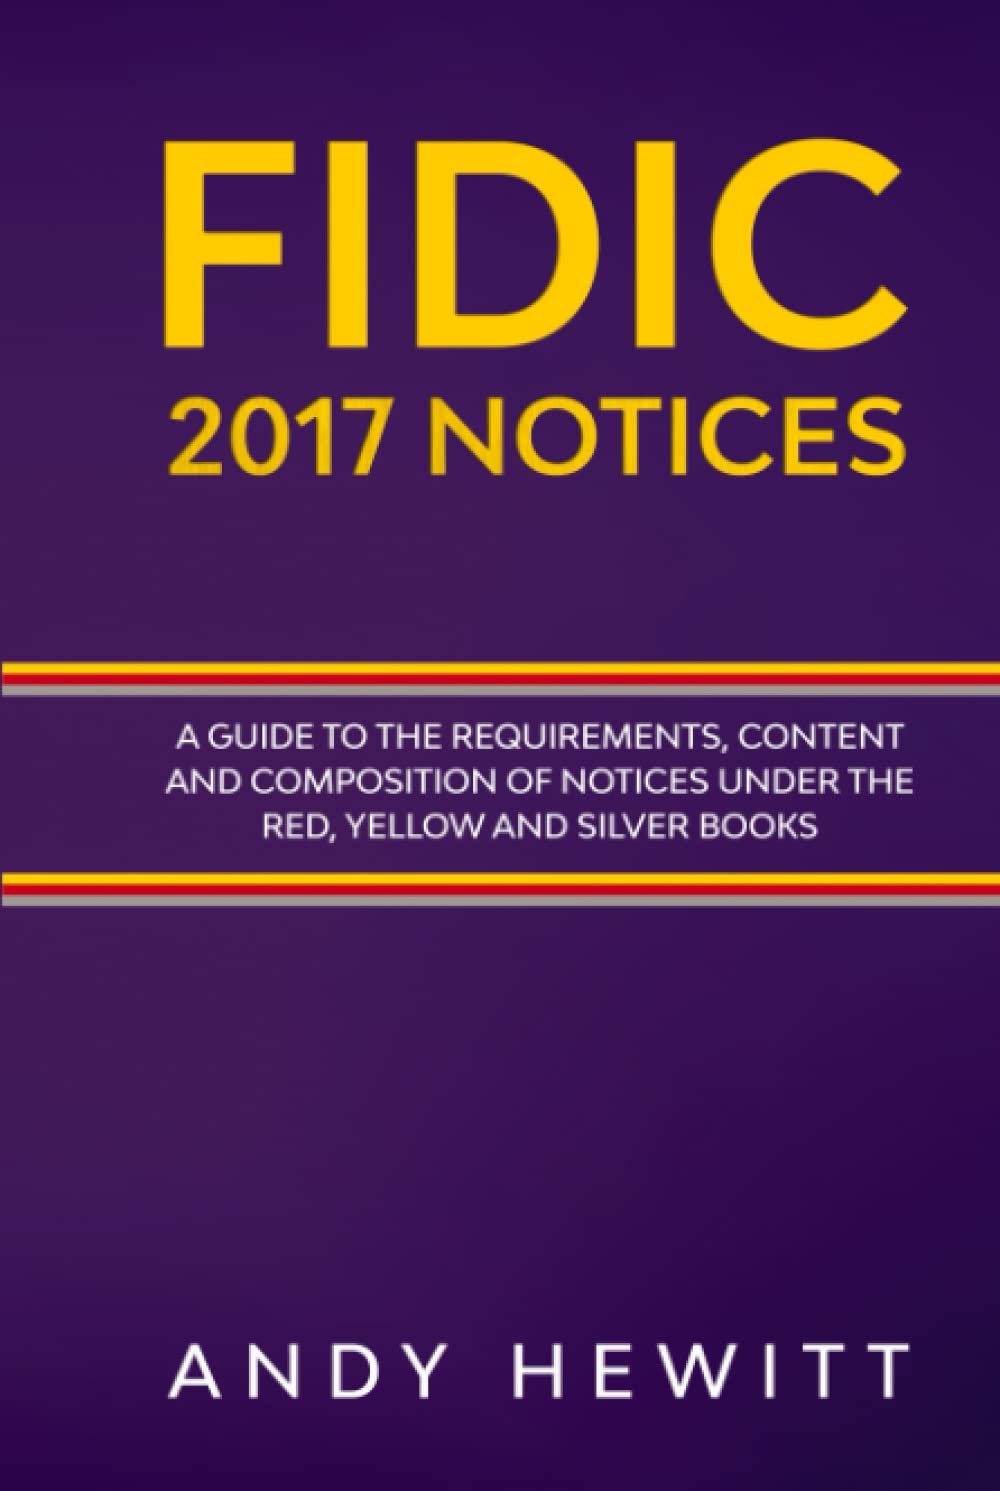 FIDIC 2017 Notices